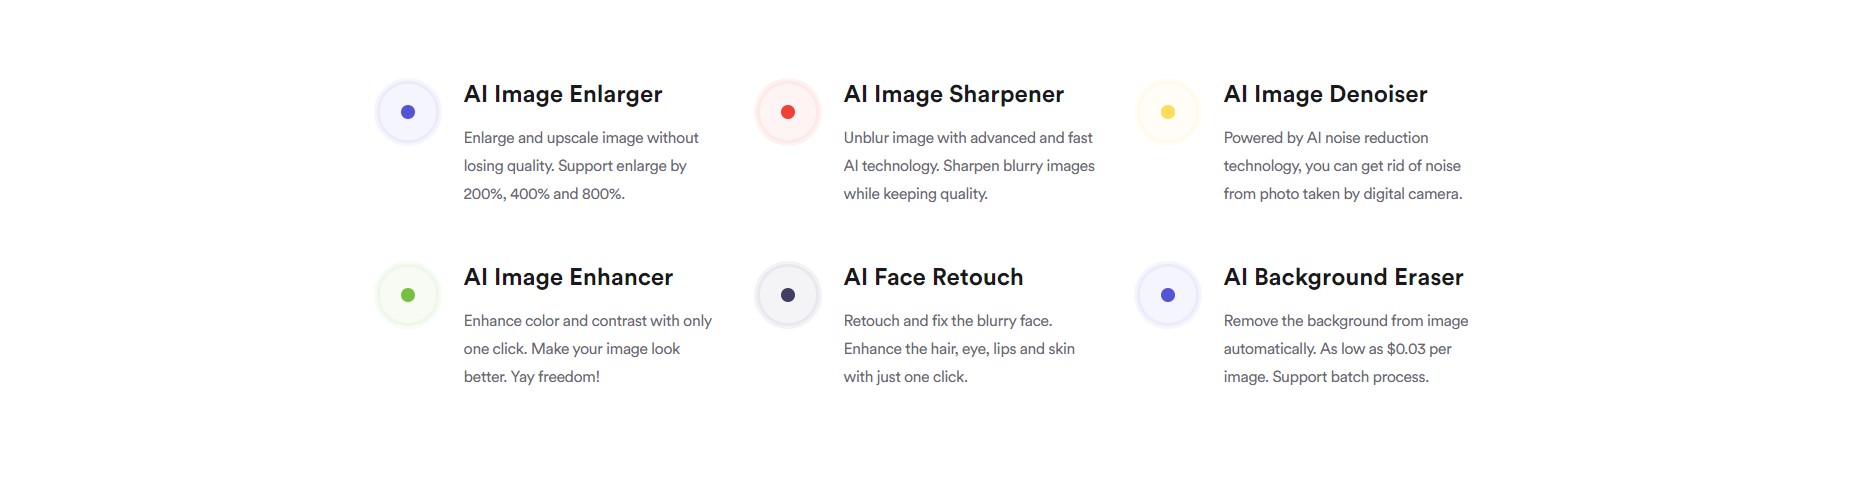 AI Image Enlarger продукты